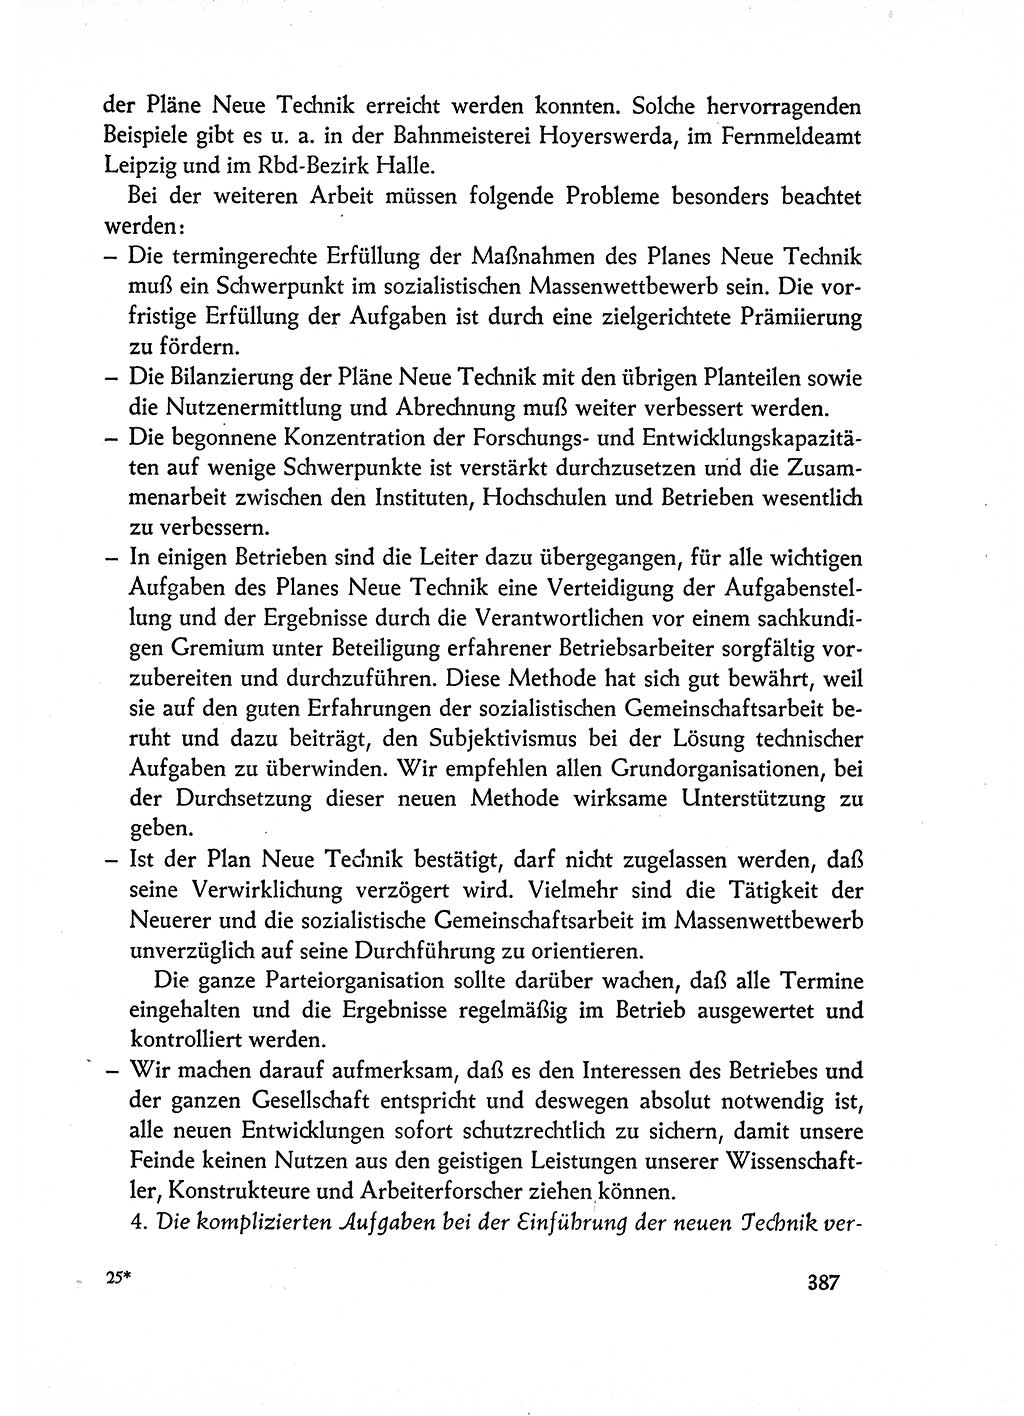 Dokumente der Sozialistischen Einheitspartei Deutschlands (SED) [Deutsche Demokratische Republik (DDR)] 1962-1963, Seite 387 (Dok. SED DDR 1962-1963, S. 387)